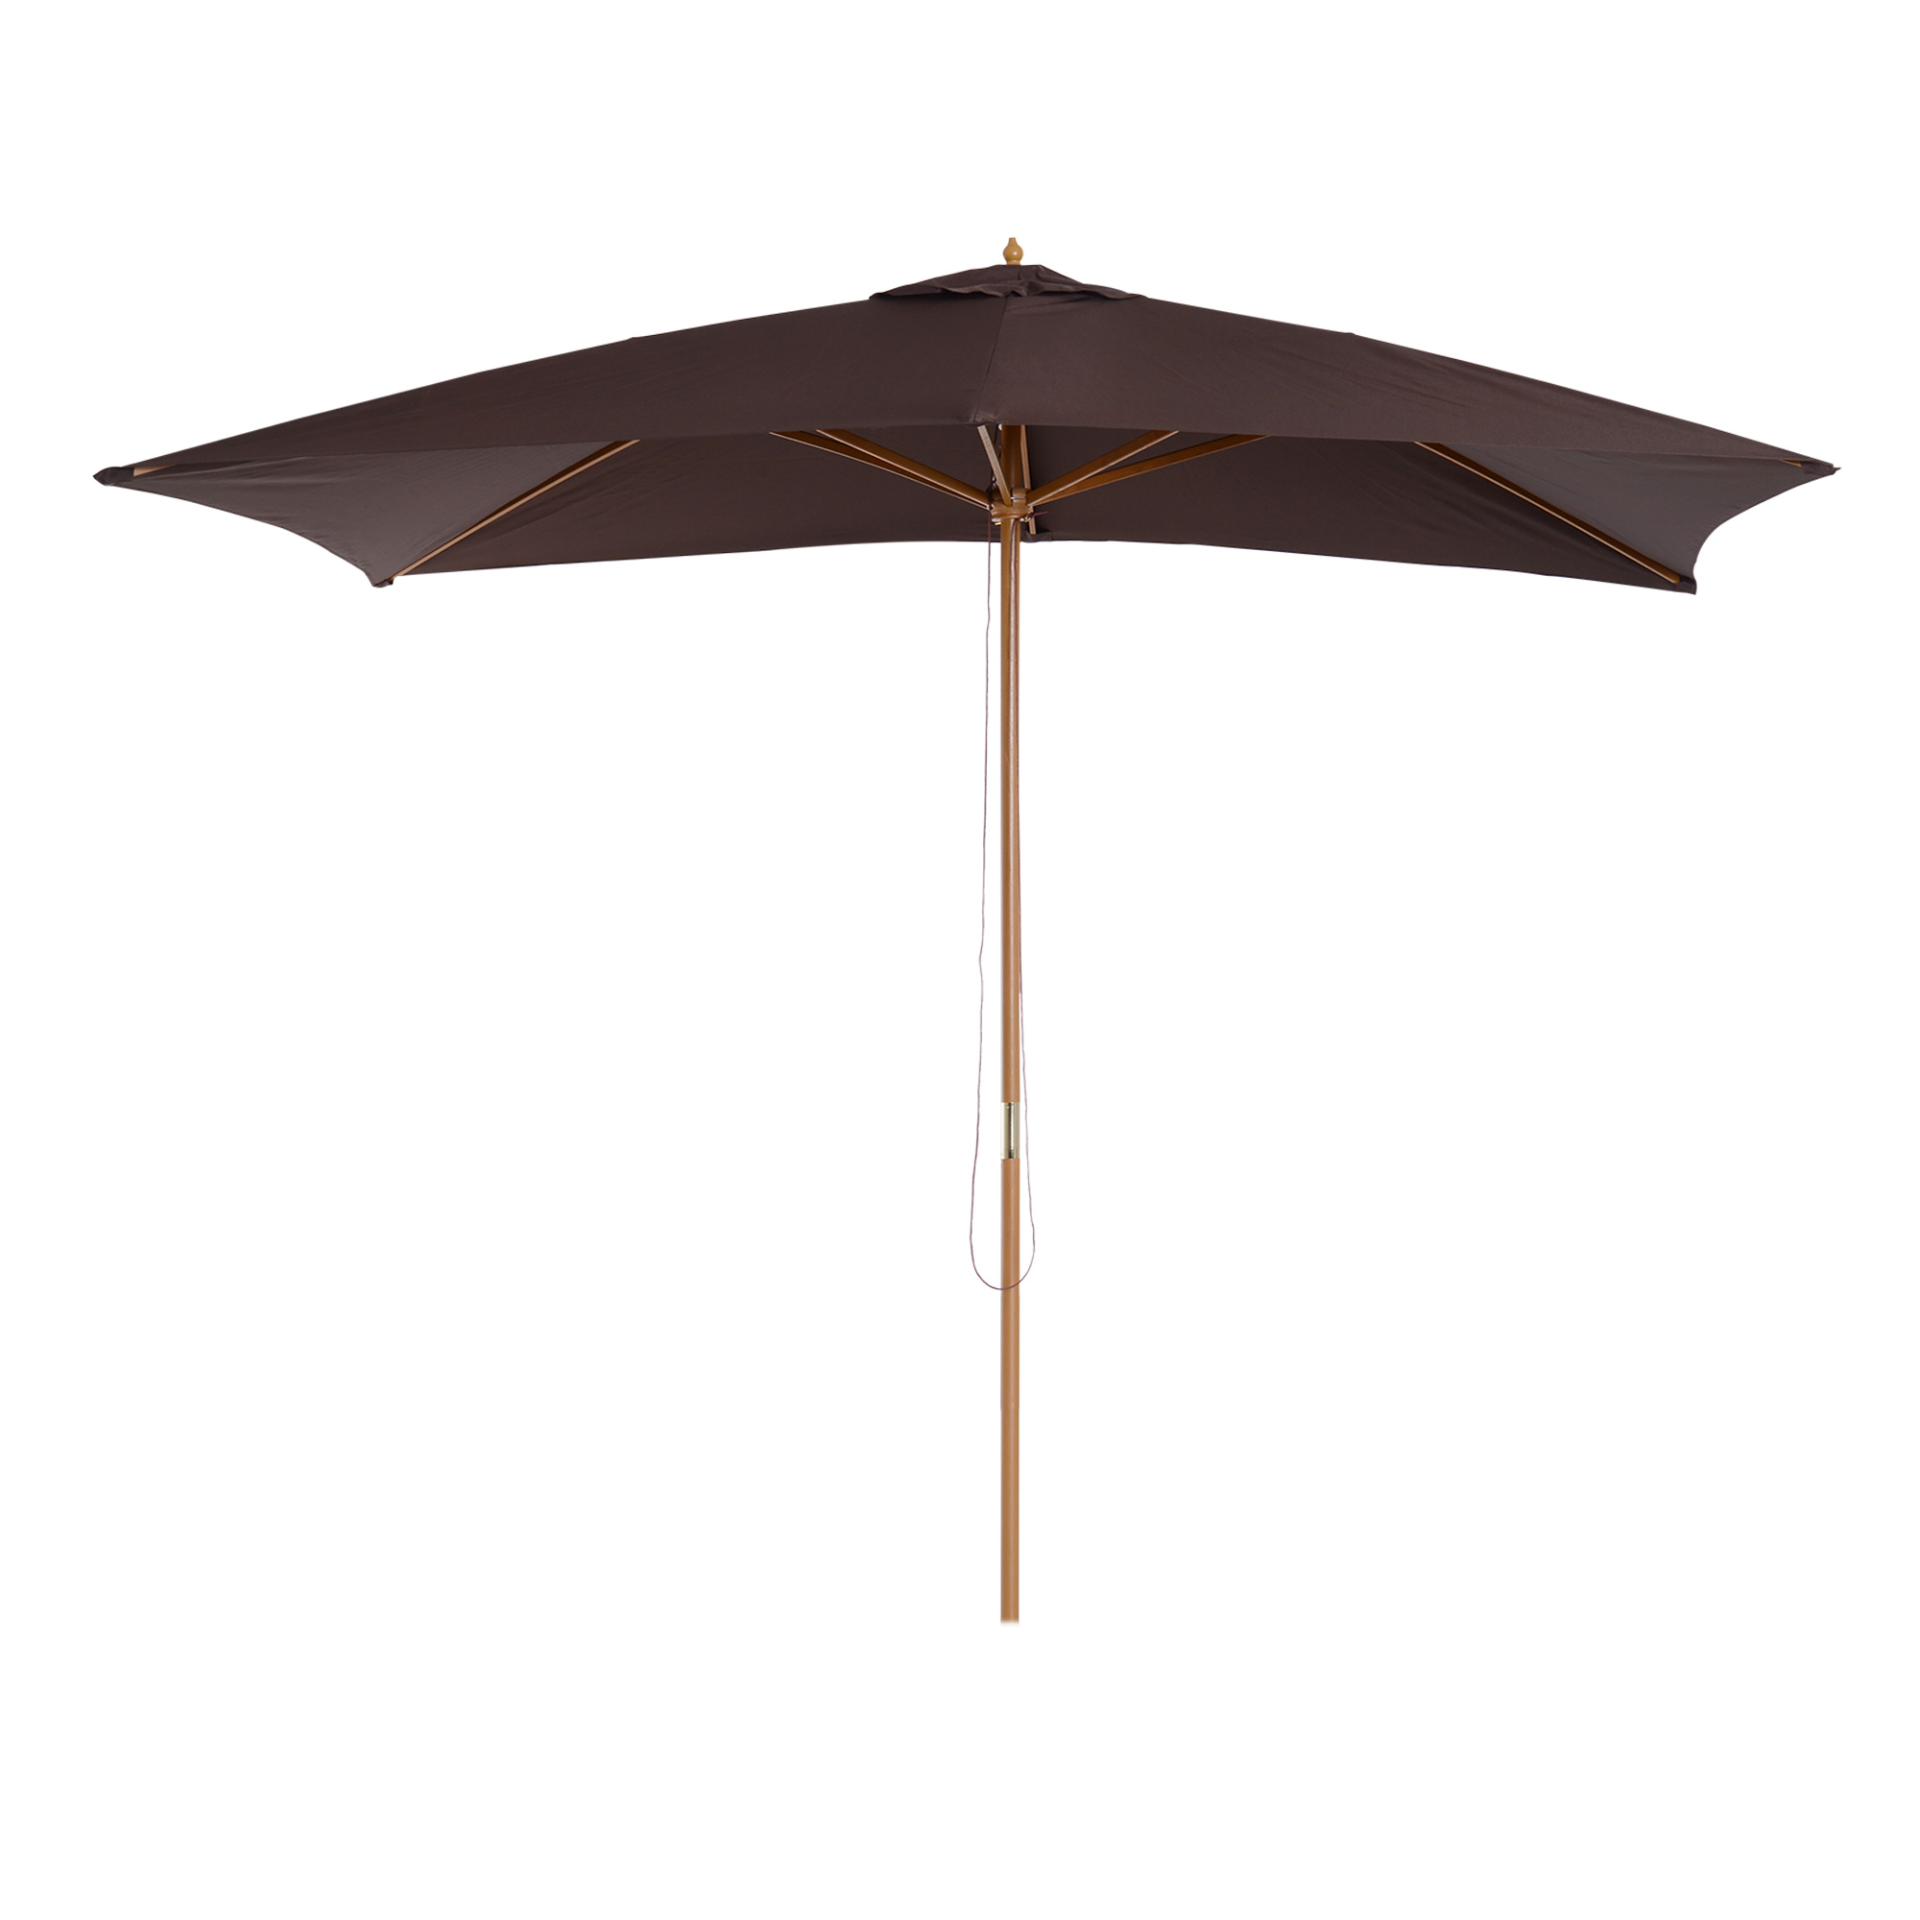 Outsunny 2 x 3m Wooden Parasol Garden Umbrellas Sun Shade Patio Outdoor Umbrella Canopy Coffee